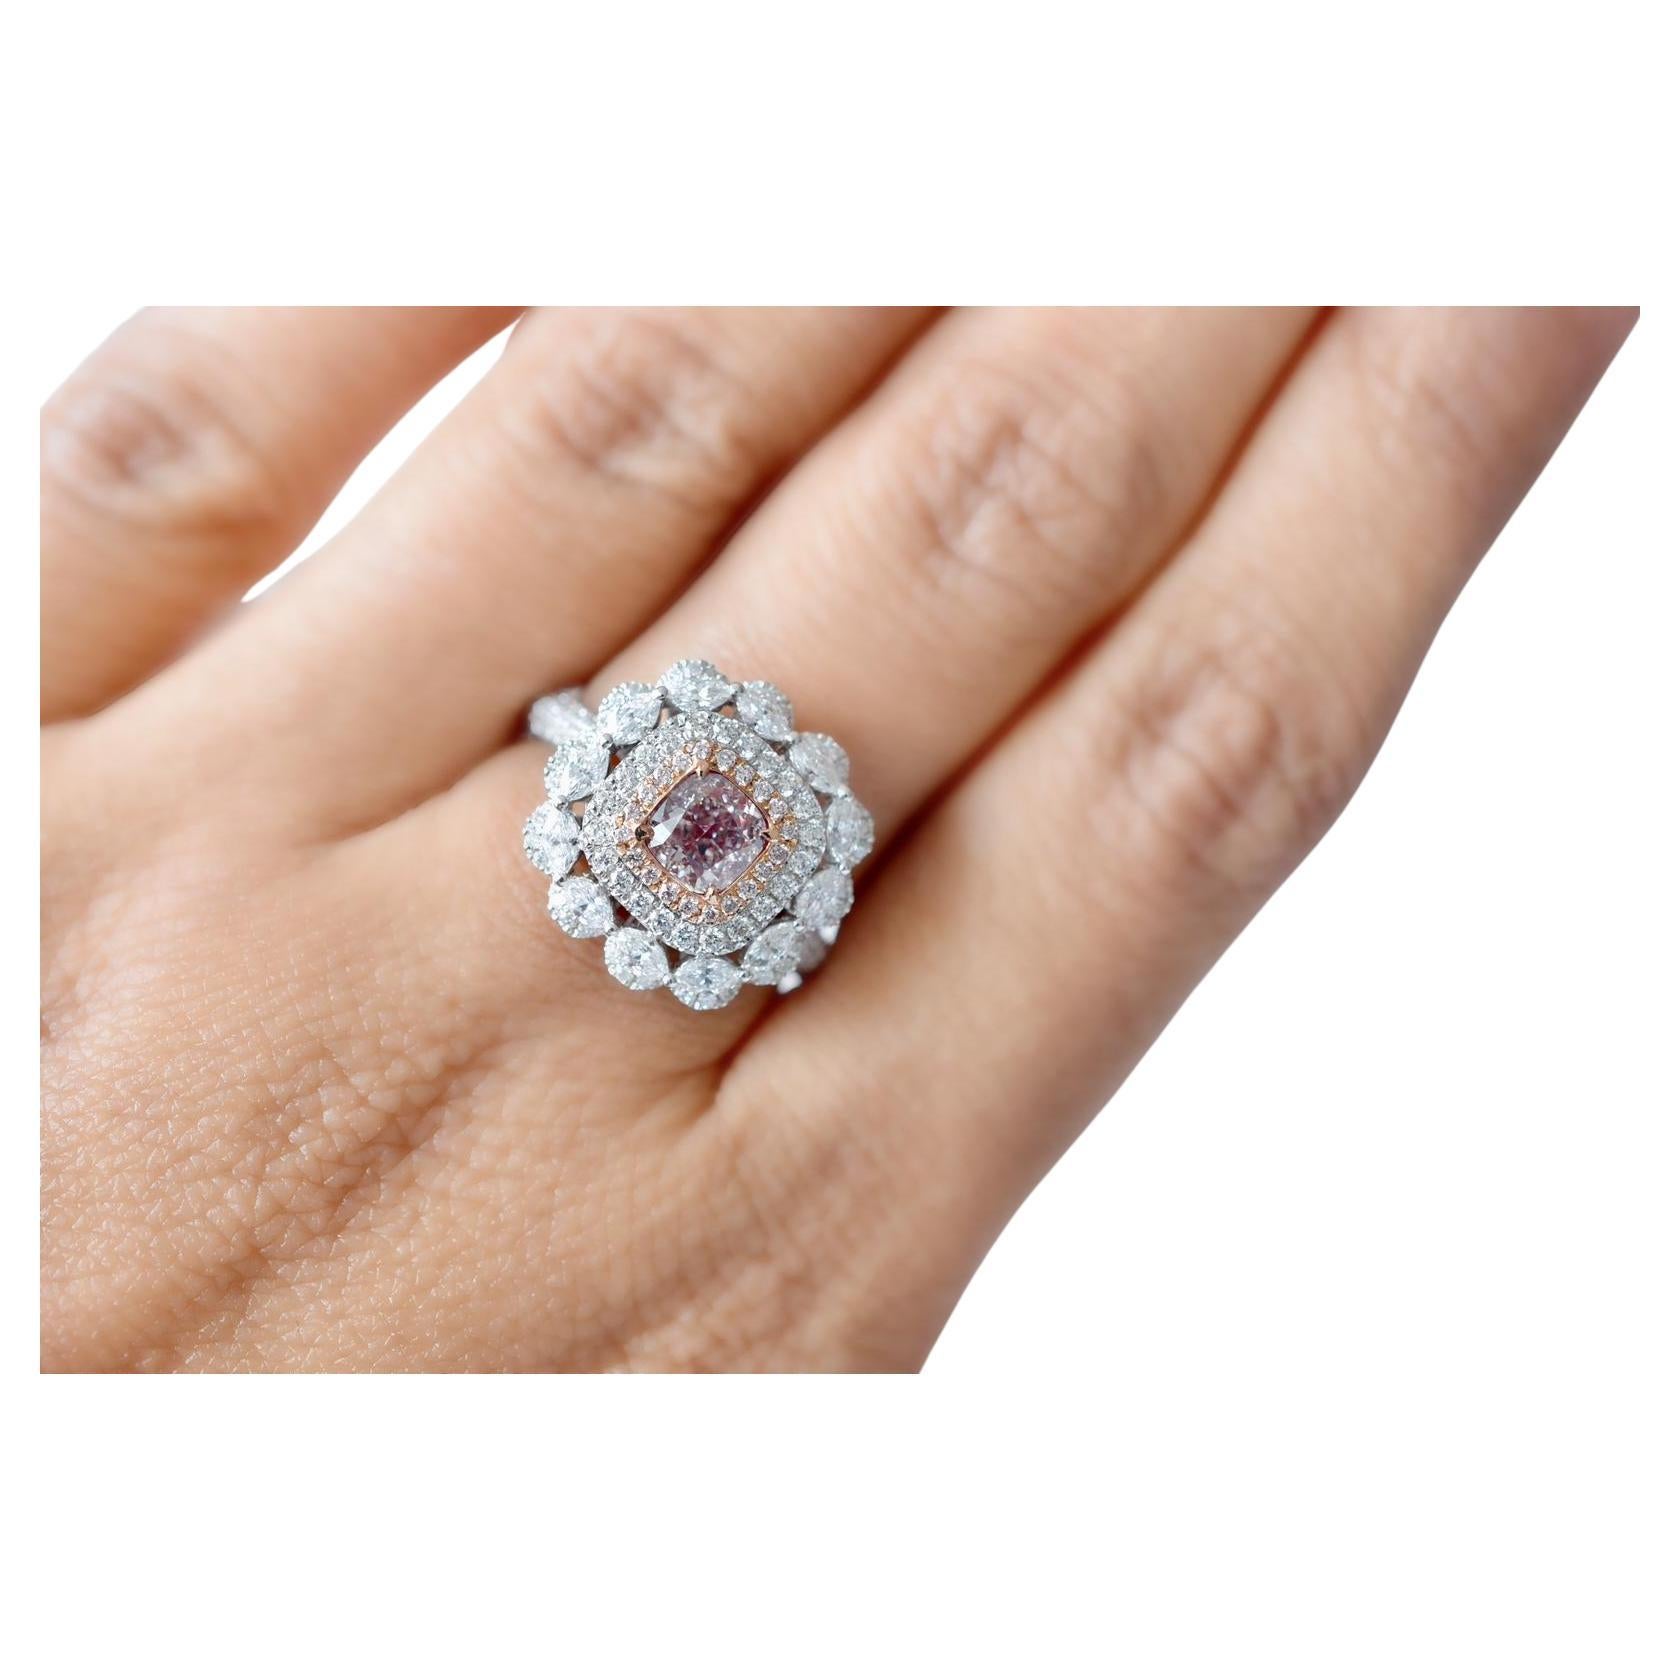 0.83 Carat Fancy Light Pinkish Brown Diamond Ring VS1 Clarity GIA Certified (bague en diamant de couleur brun rosé)